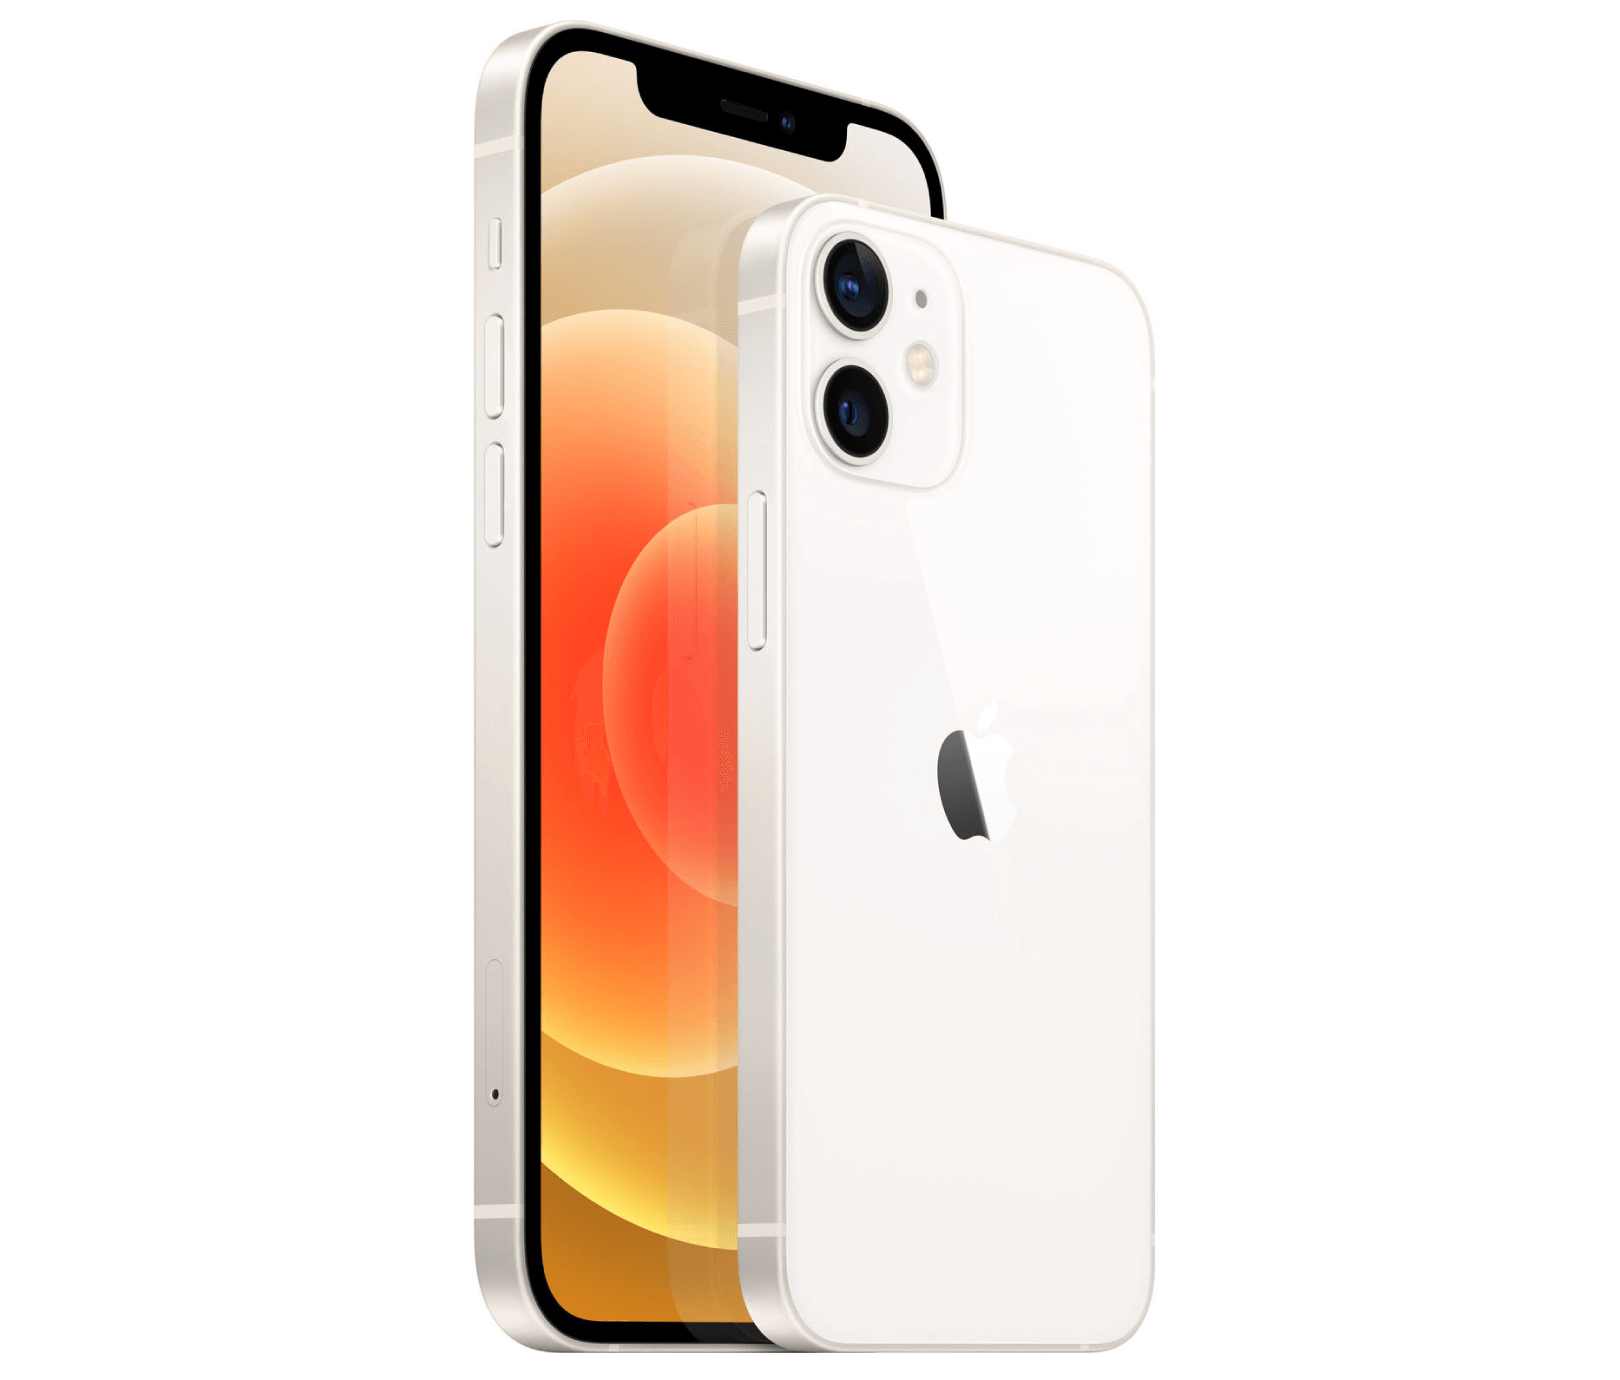 Apple presenta el iPhone 12 y el iPhone 12 mini en un nuevo y espectacular  color morado - Apple (LA)